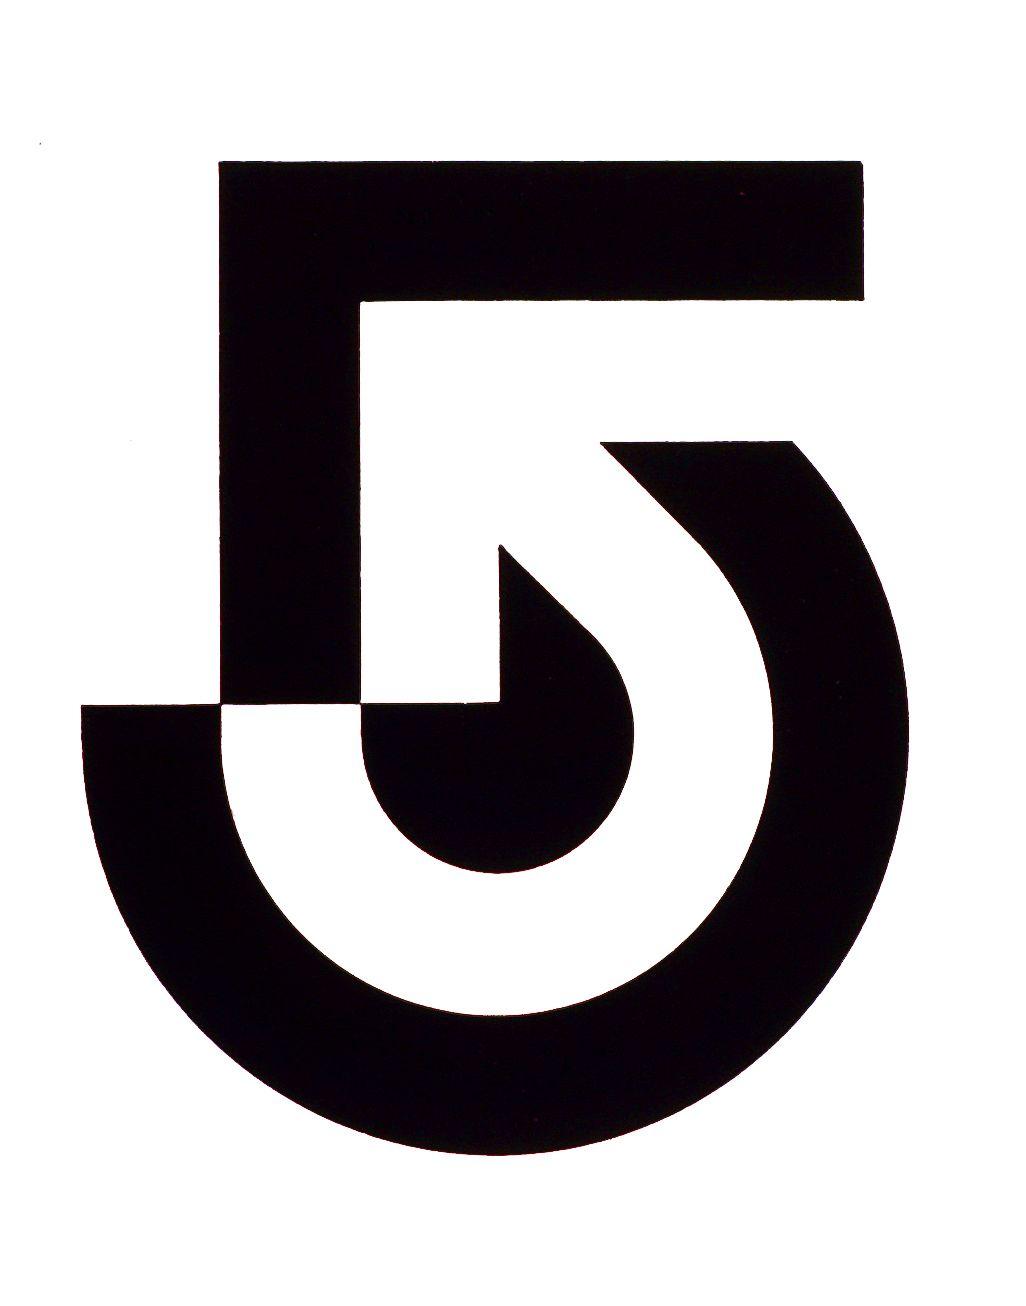 5 Black Logo - WCVB Boston, Channel 5